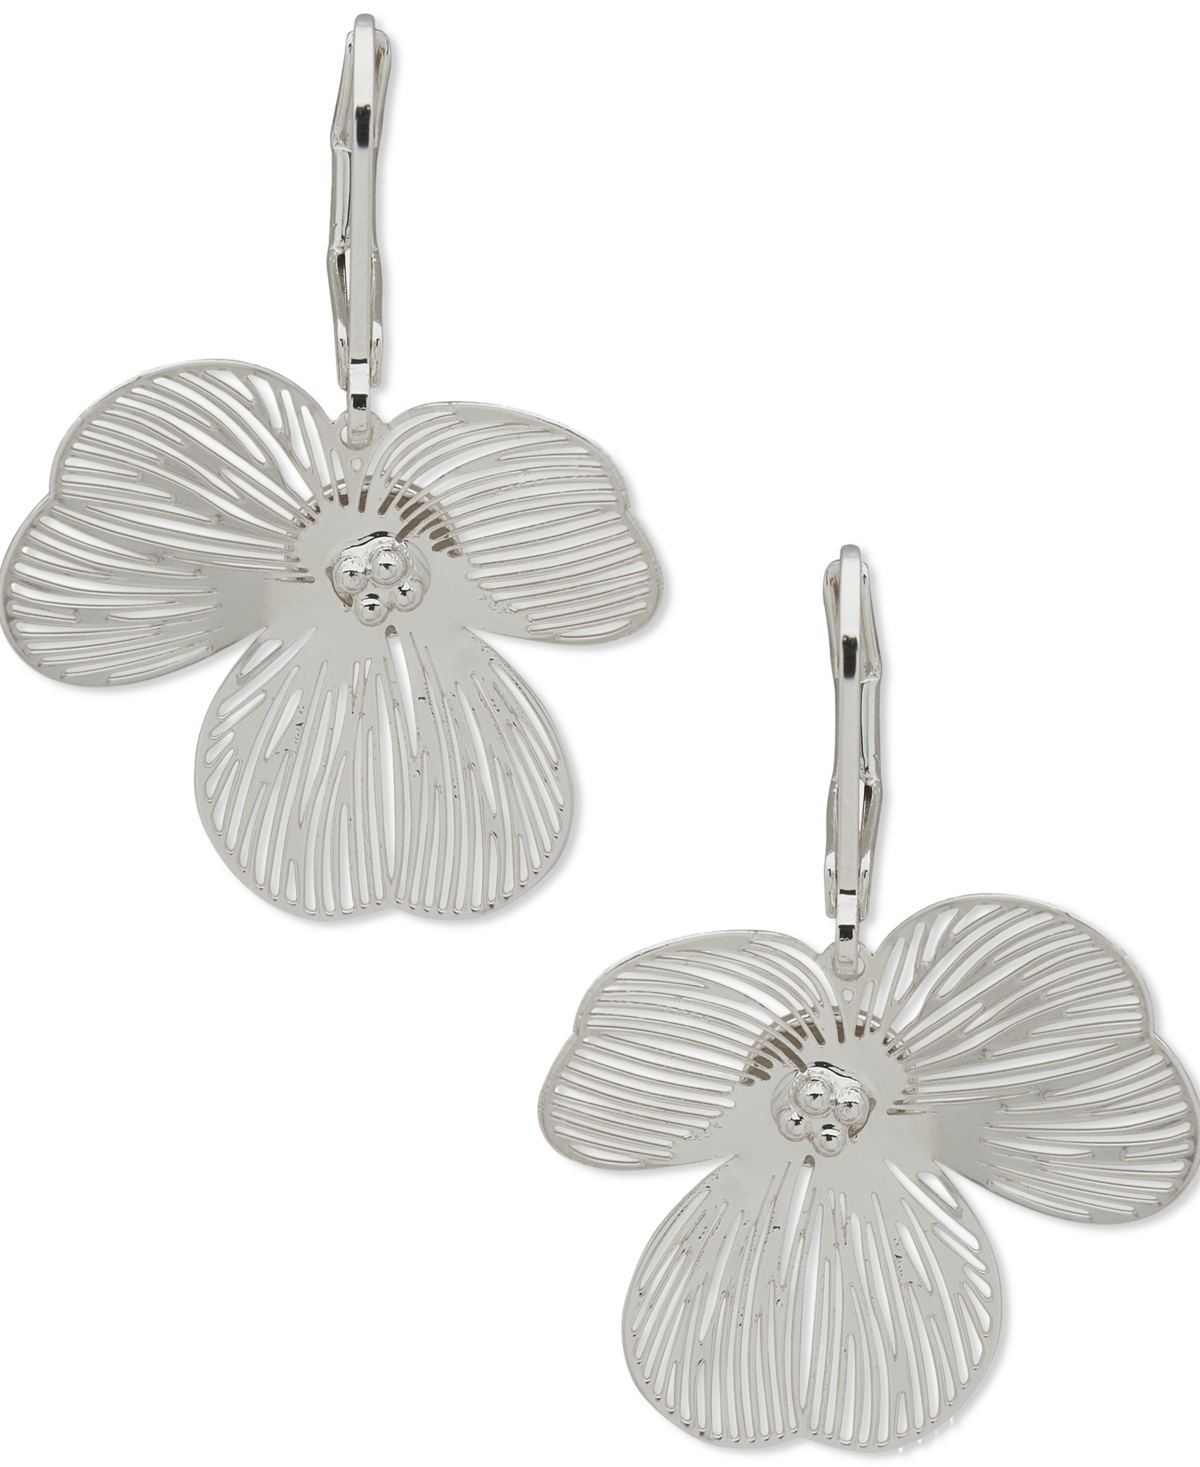 Silver-Tone Openwork Flower Drop Earrings - Seafoam